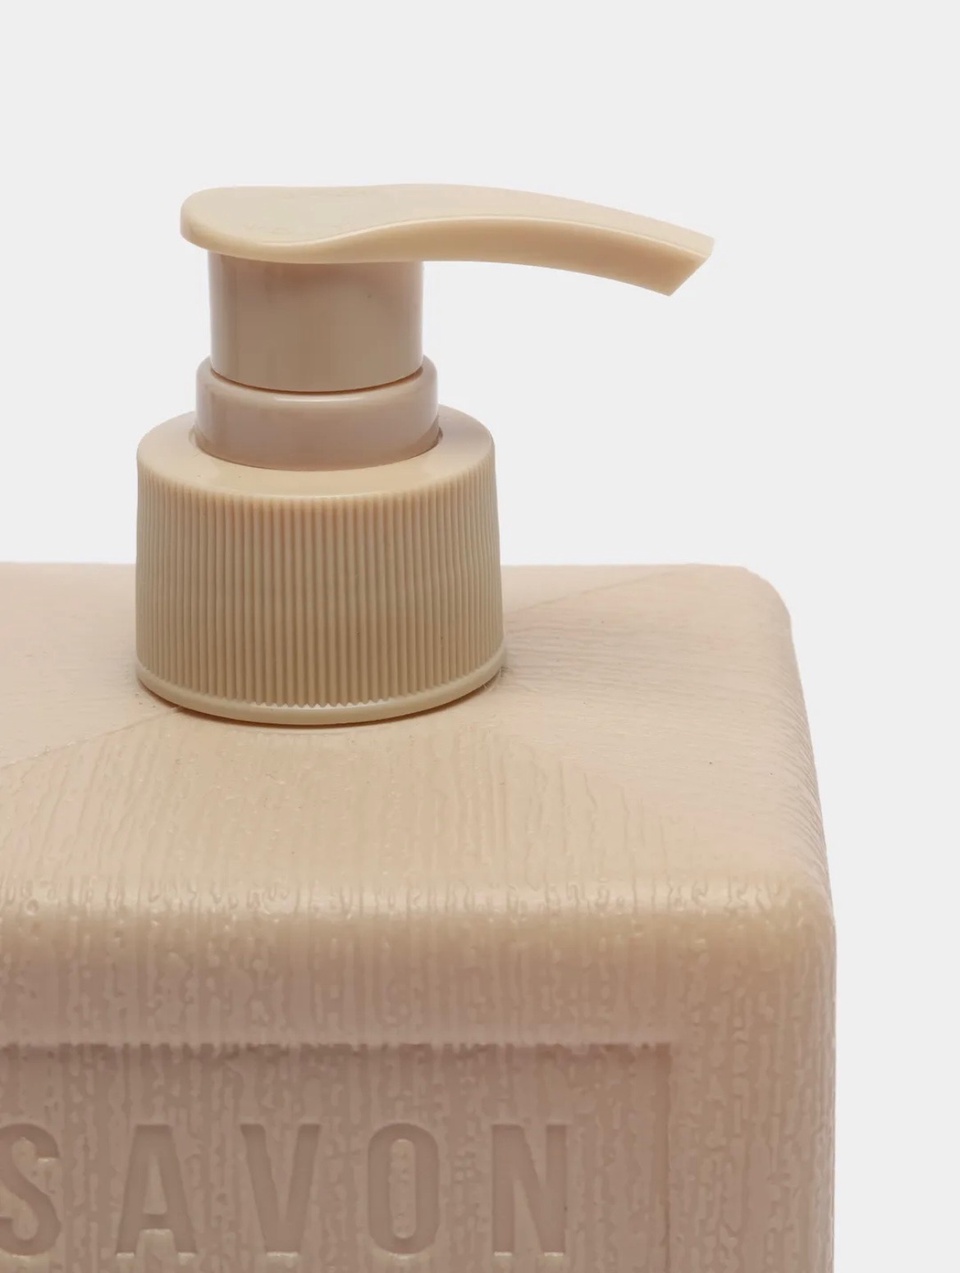 Savon De Royal Жидкое мыло для рук «Кремовый  куб», серия “Прованс» - 200 ₽, заказать онлайн.